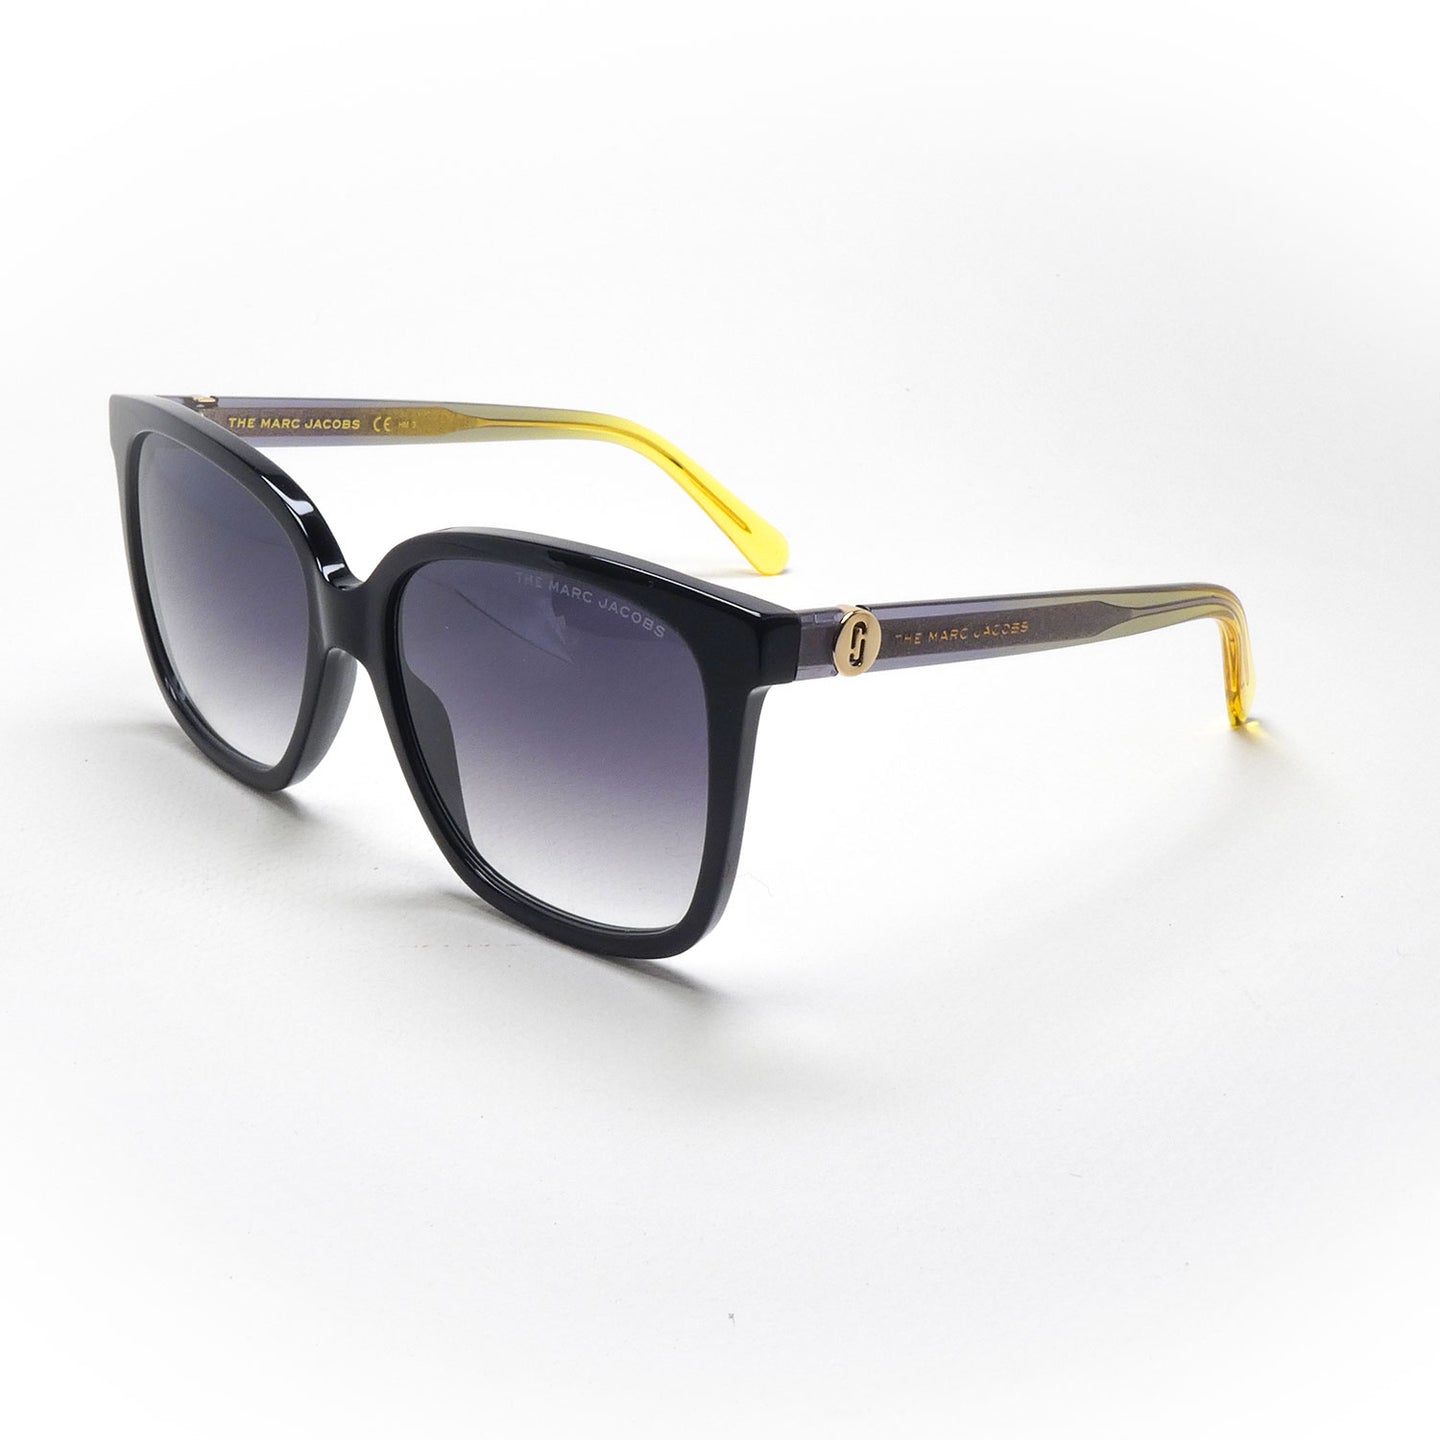 sunglasses marc jacobs model 582 color 71c